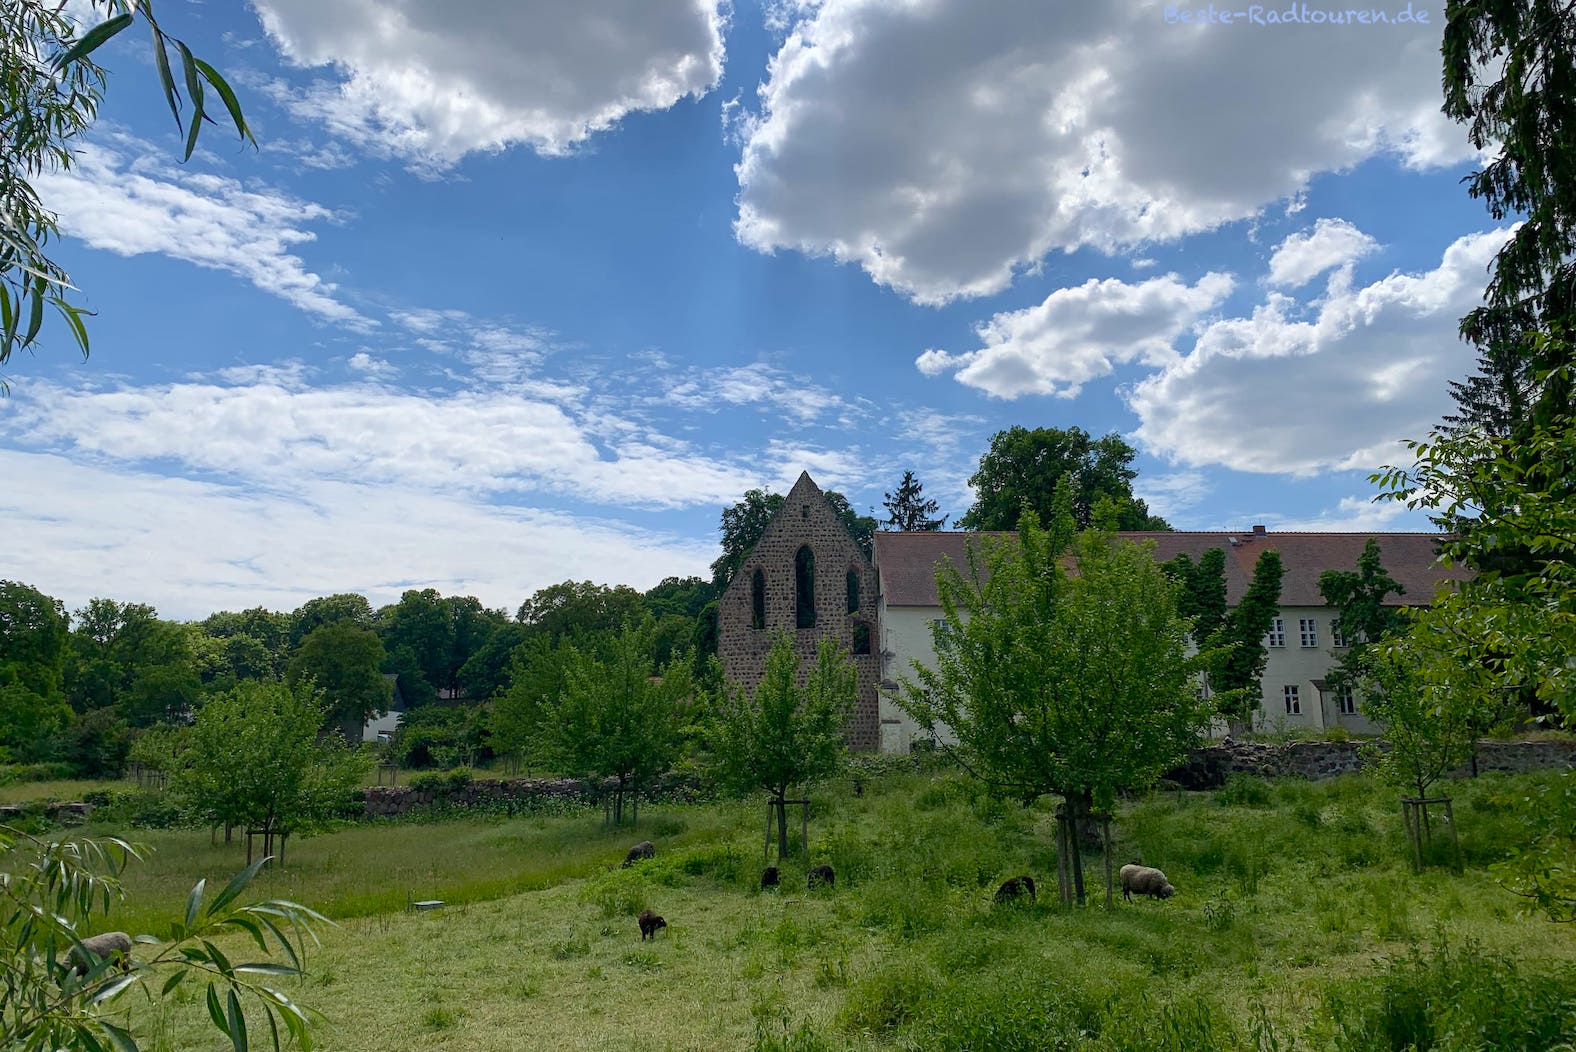 Kloster Zehdenick, Außenansicht mit Schafen und Klostergarten, Foto vom Norden her